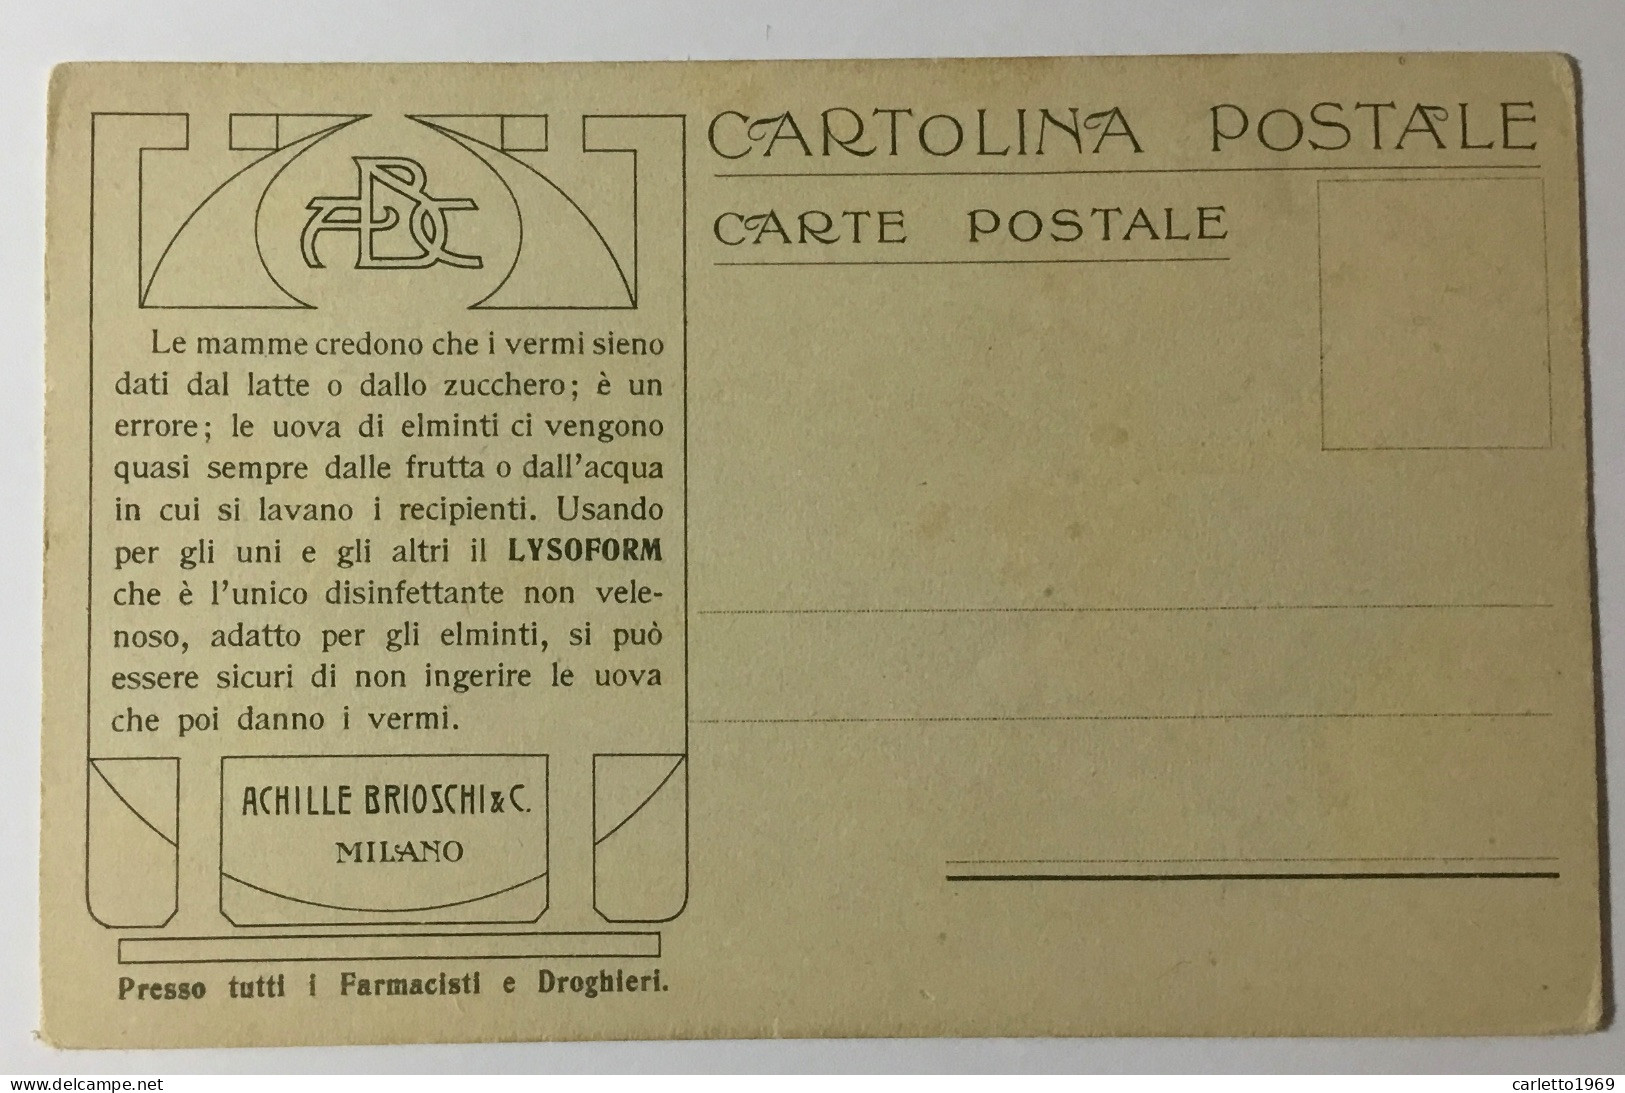 LA POSTA NELLA SVIZZERA   - RETRO PUBBLICITÀ BRIOSCHI - NV FP - Postal Services